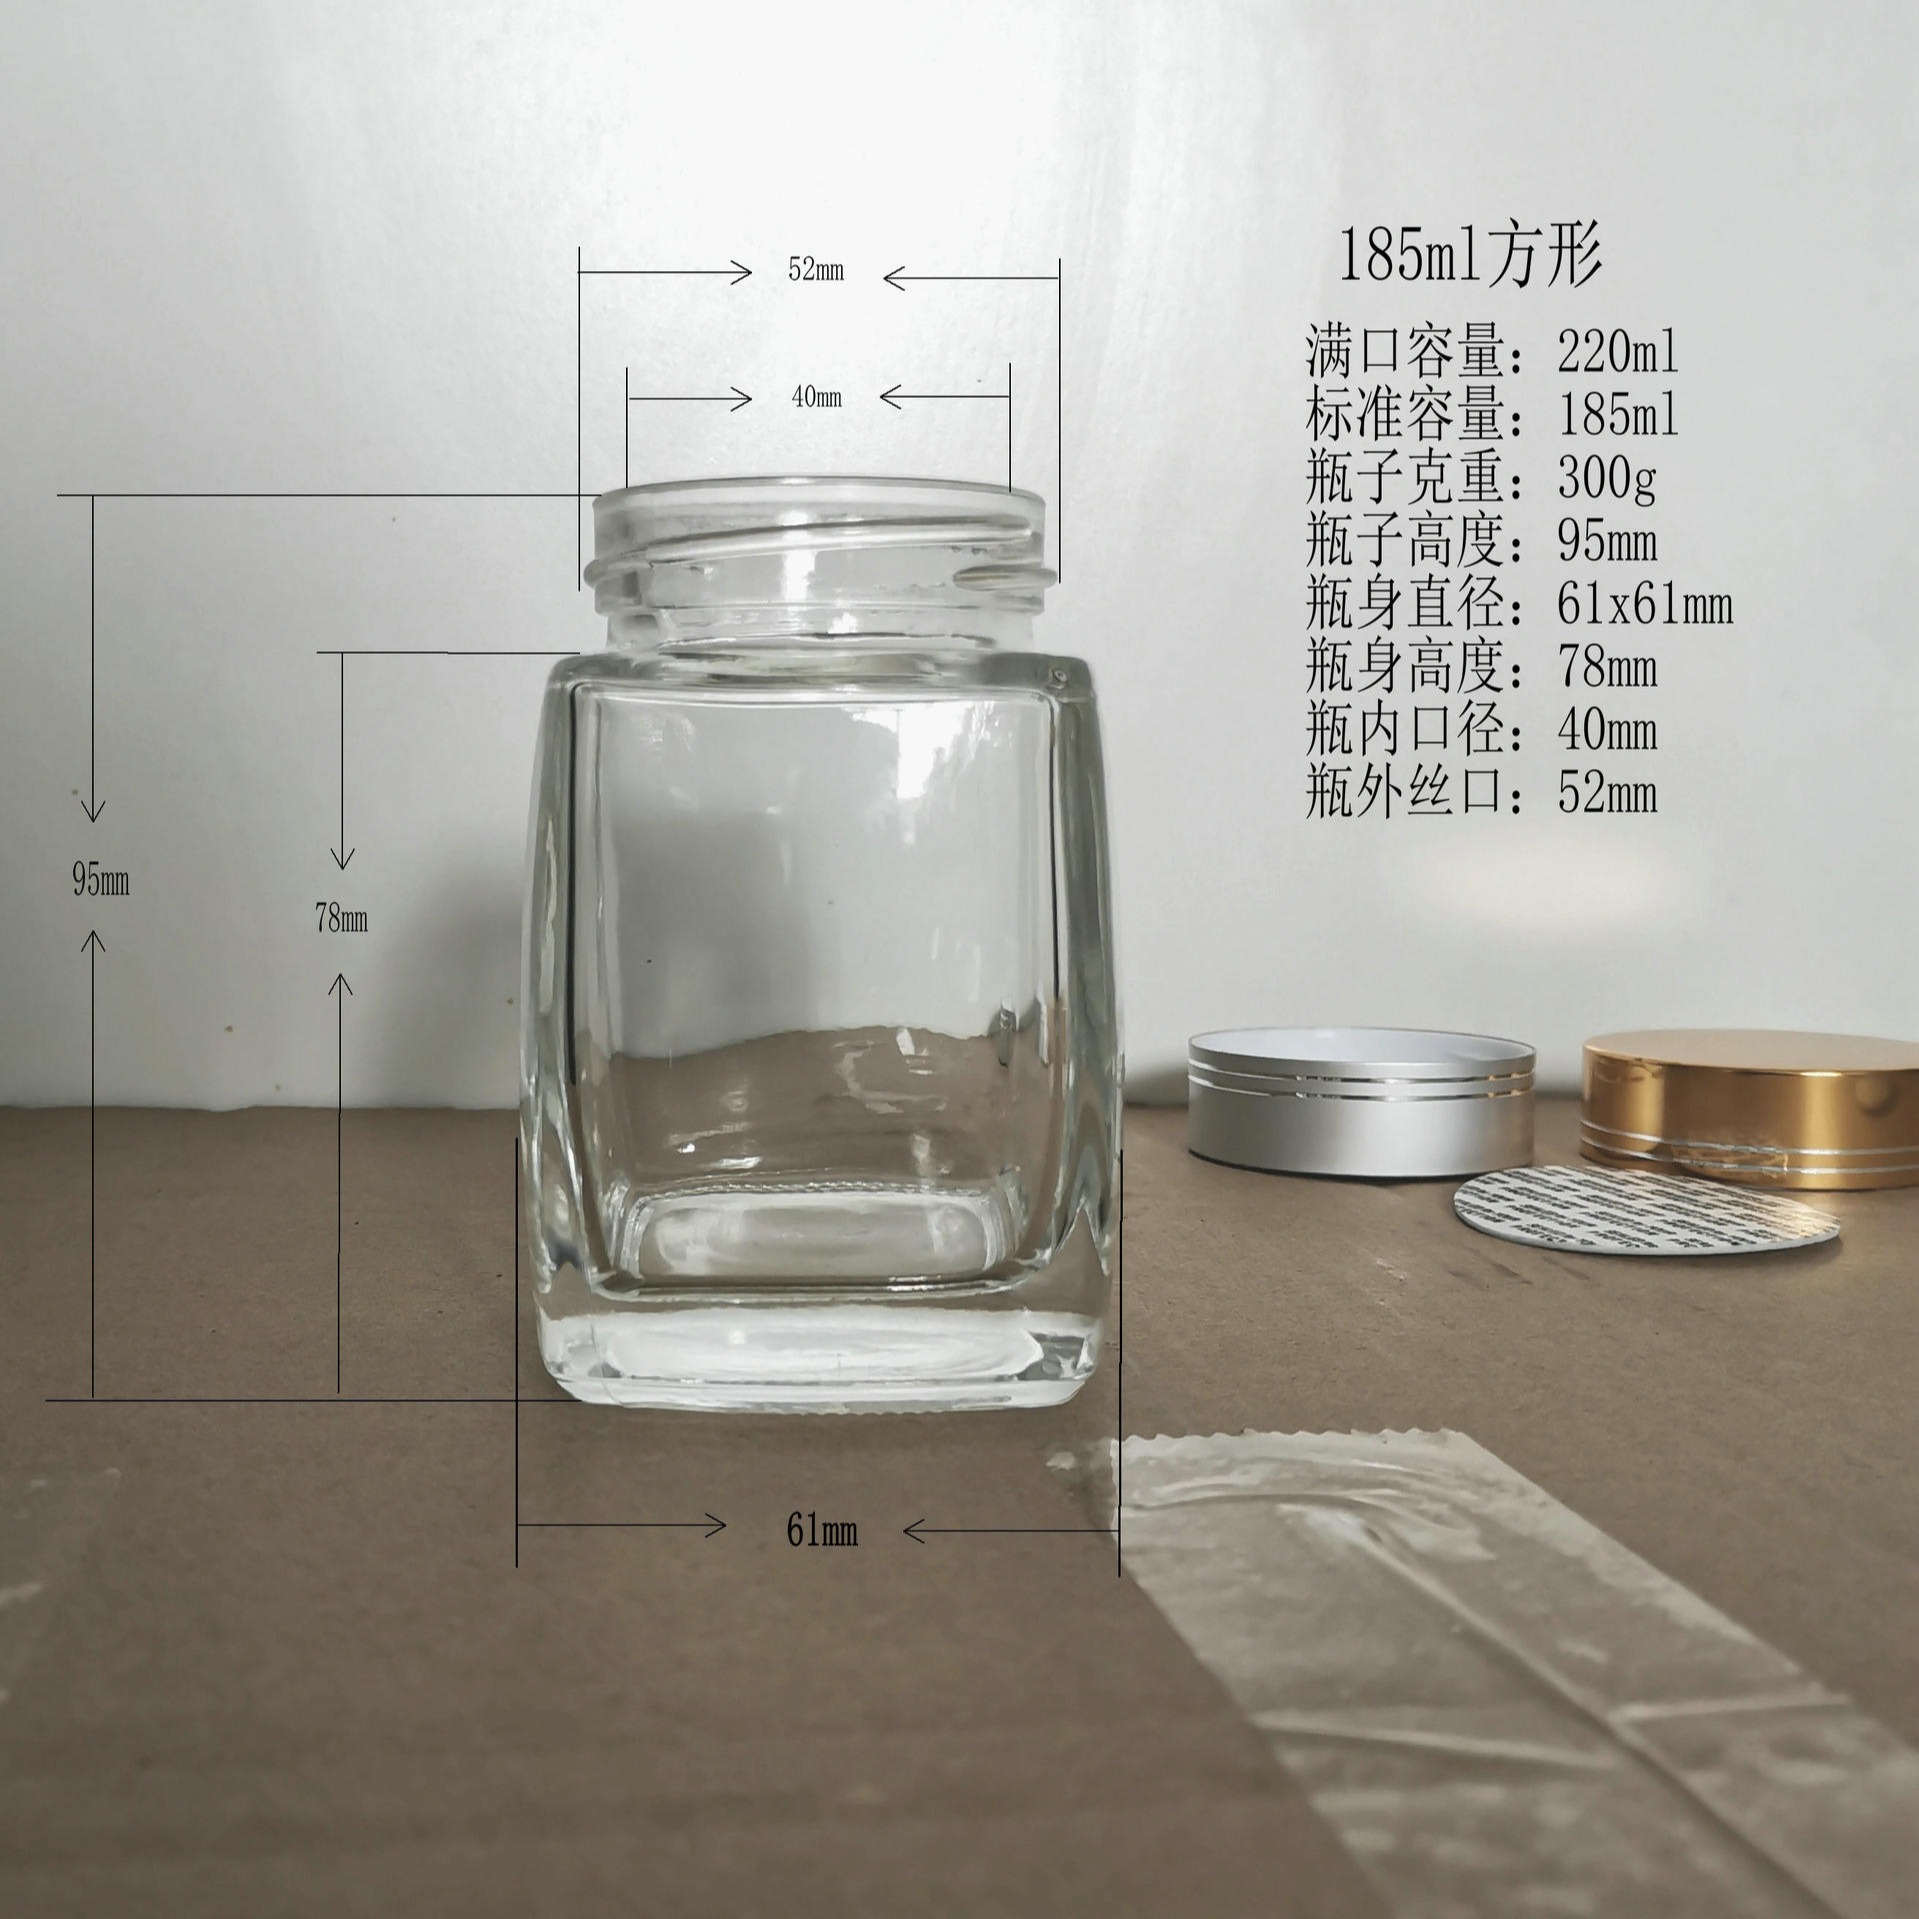 蜂蜜瓶新款玻璃蜂蜜瓶装隆安玻璃制品包装250克500克1000克方形瓶扁方形瓶圆形瓶图片